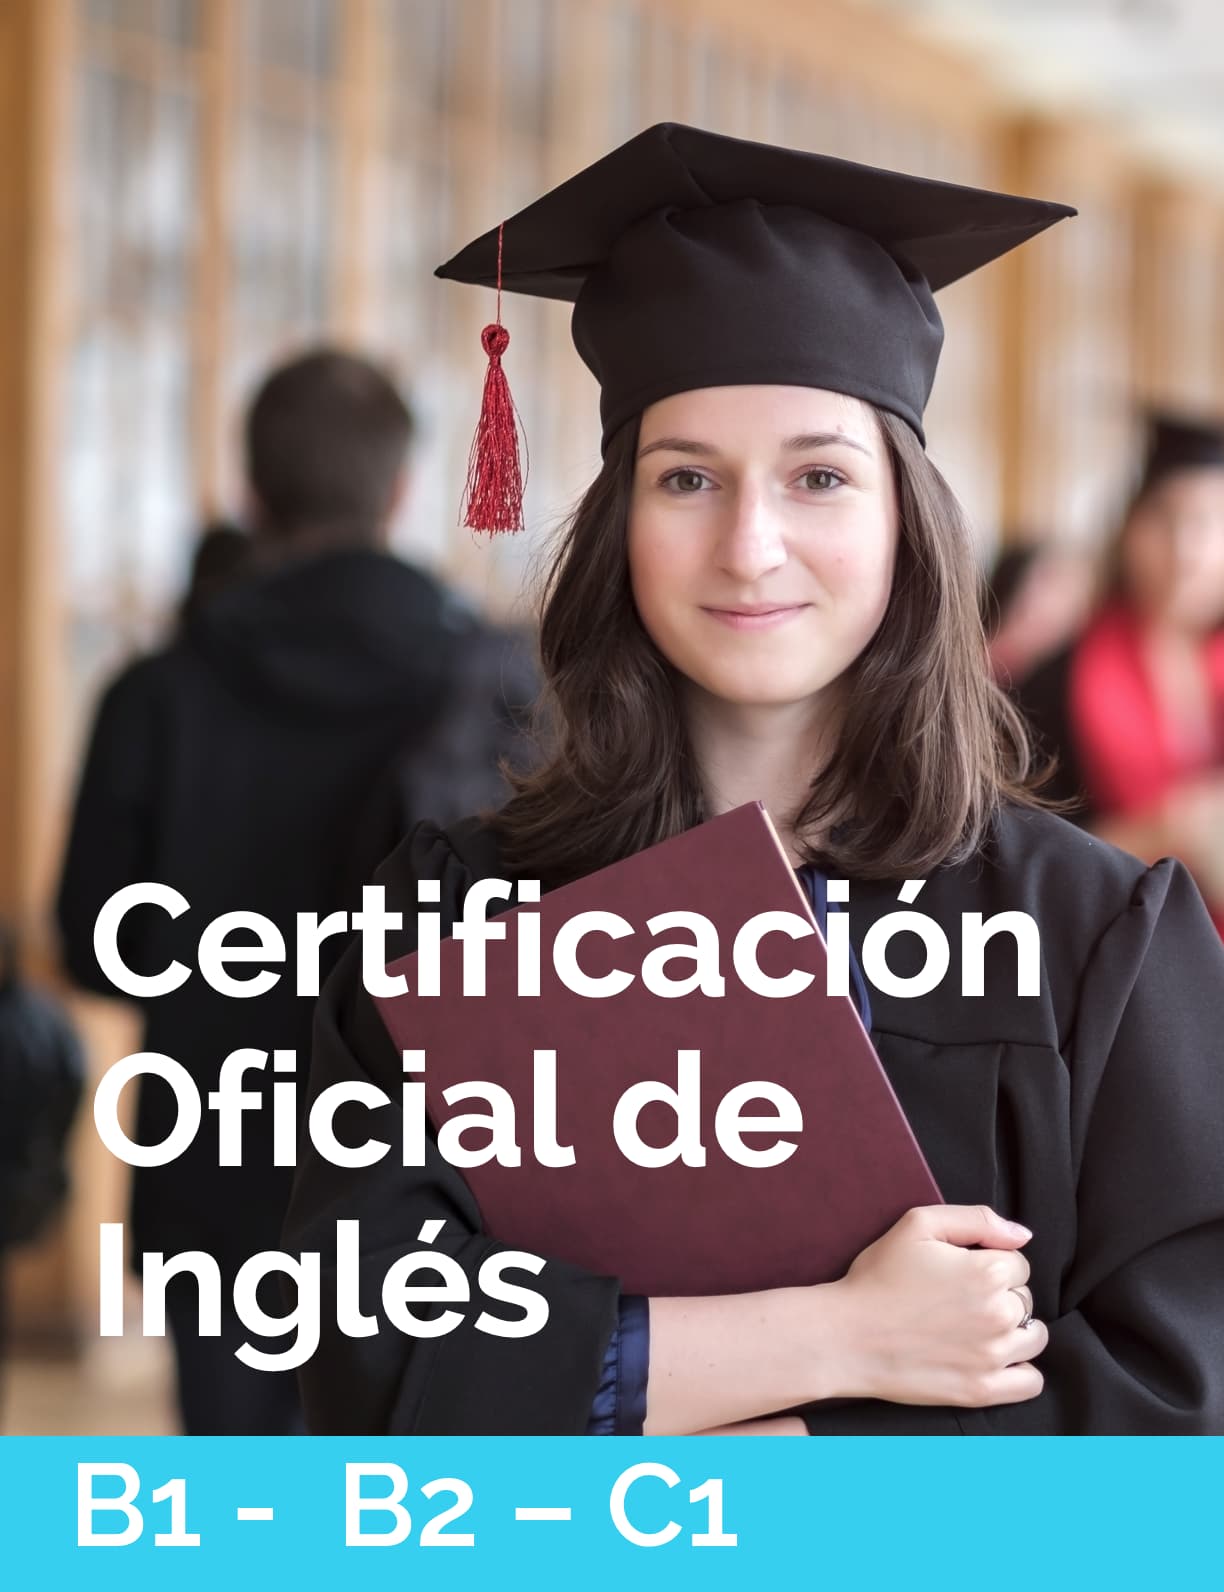 Exámenes de certificación oficial en inglés para jóvenes